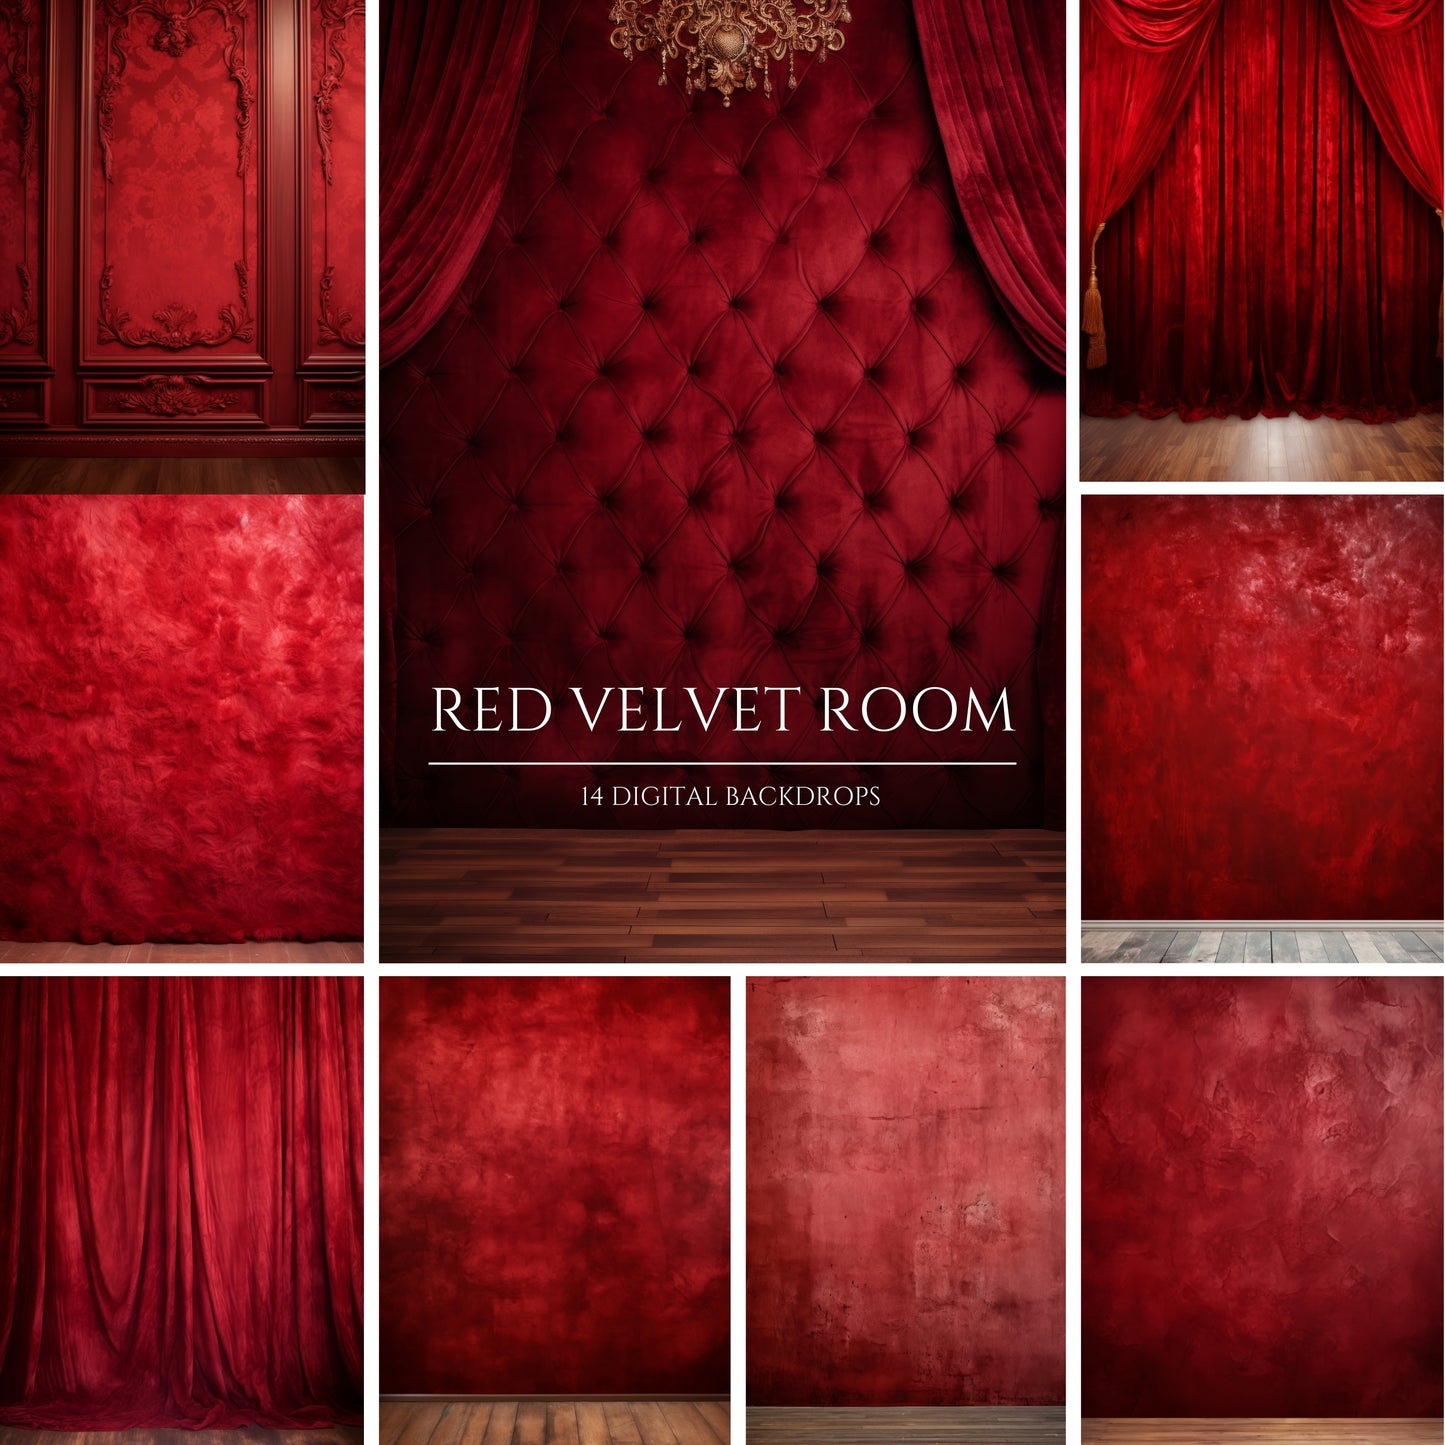 Red Velvet Room Digital Backdrops